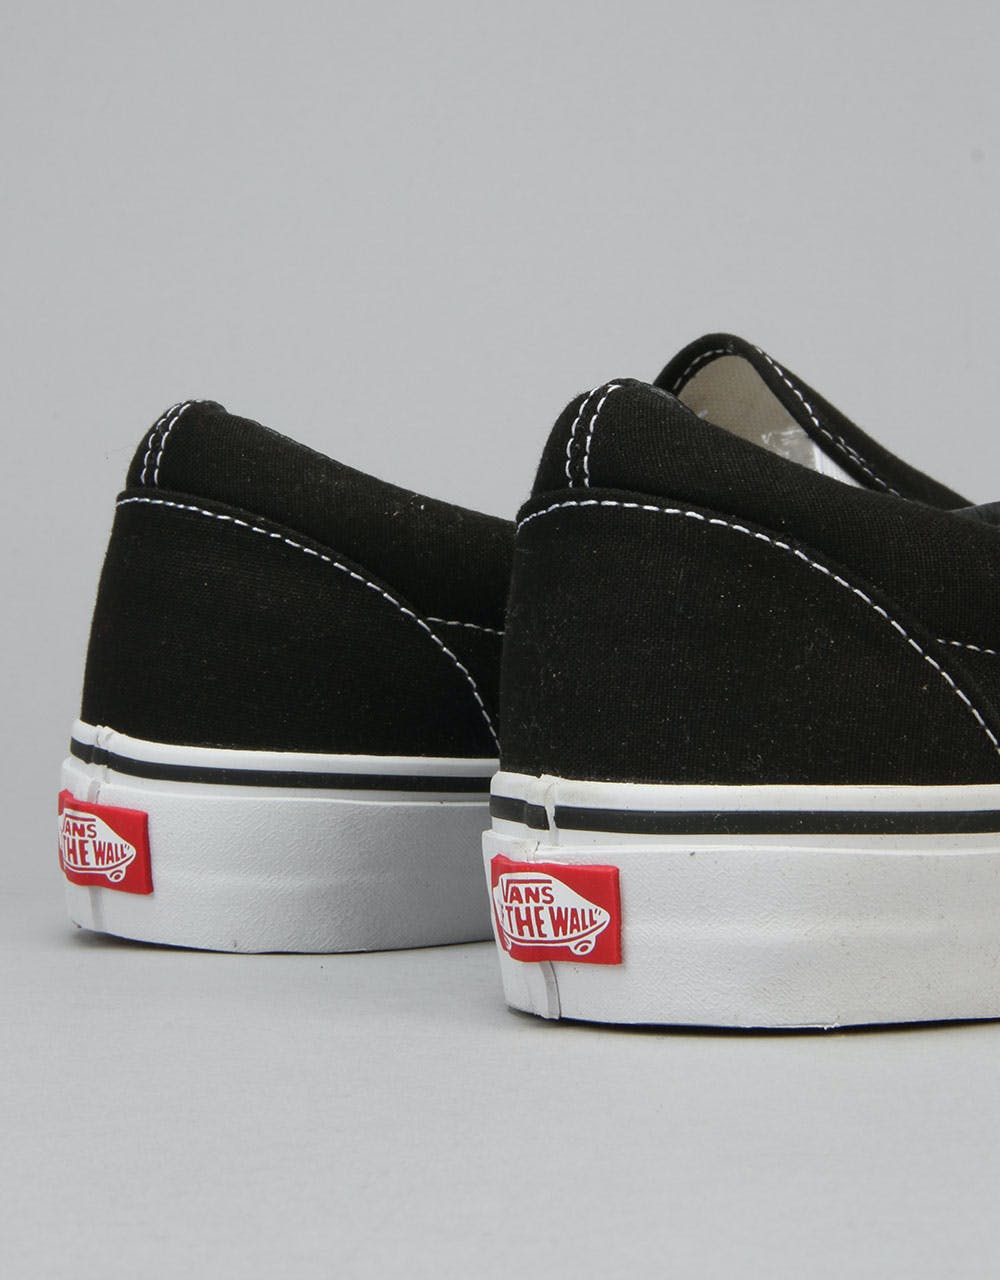 Vans Classic Slip On Skate Shoes - Black/White